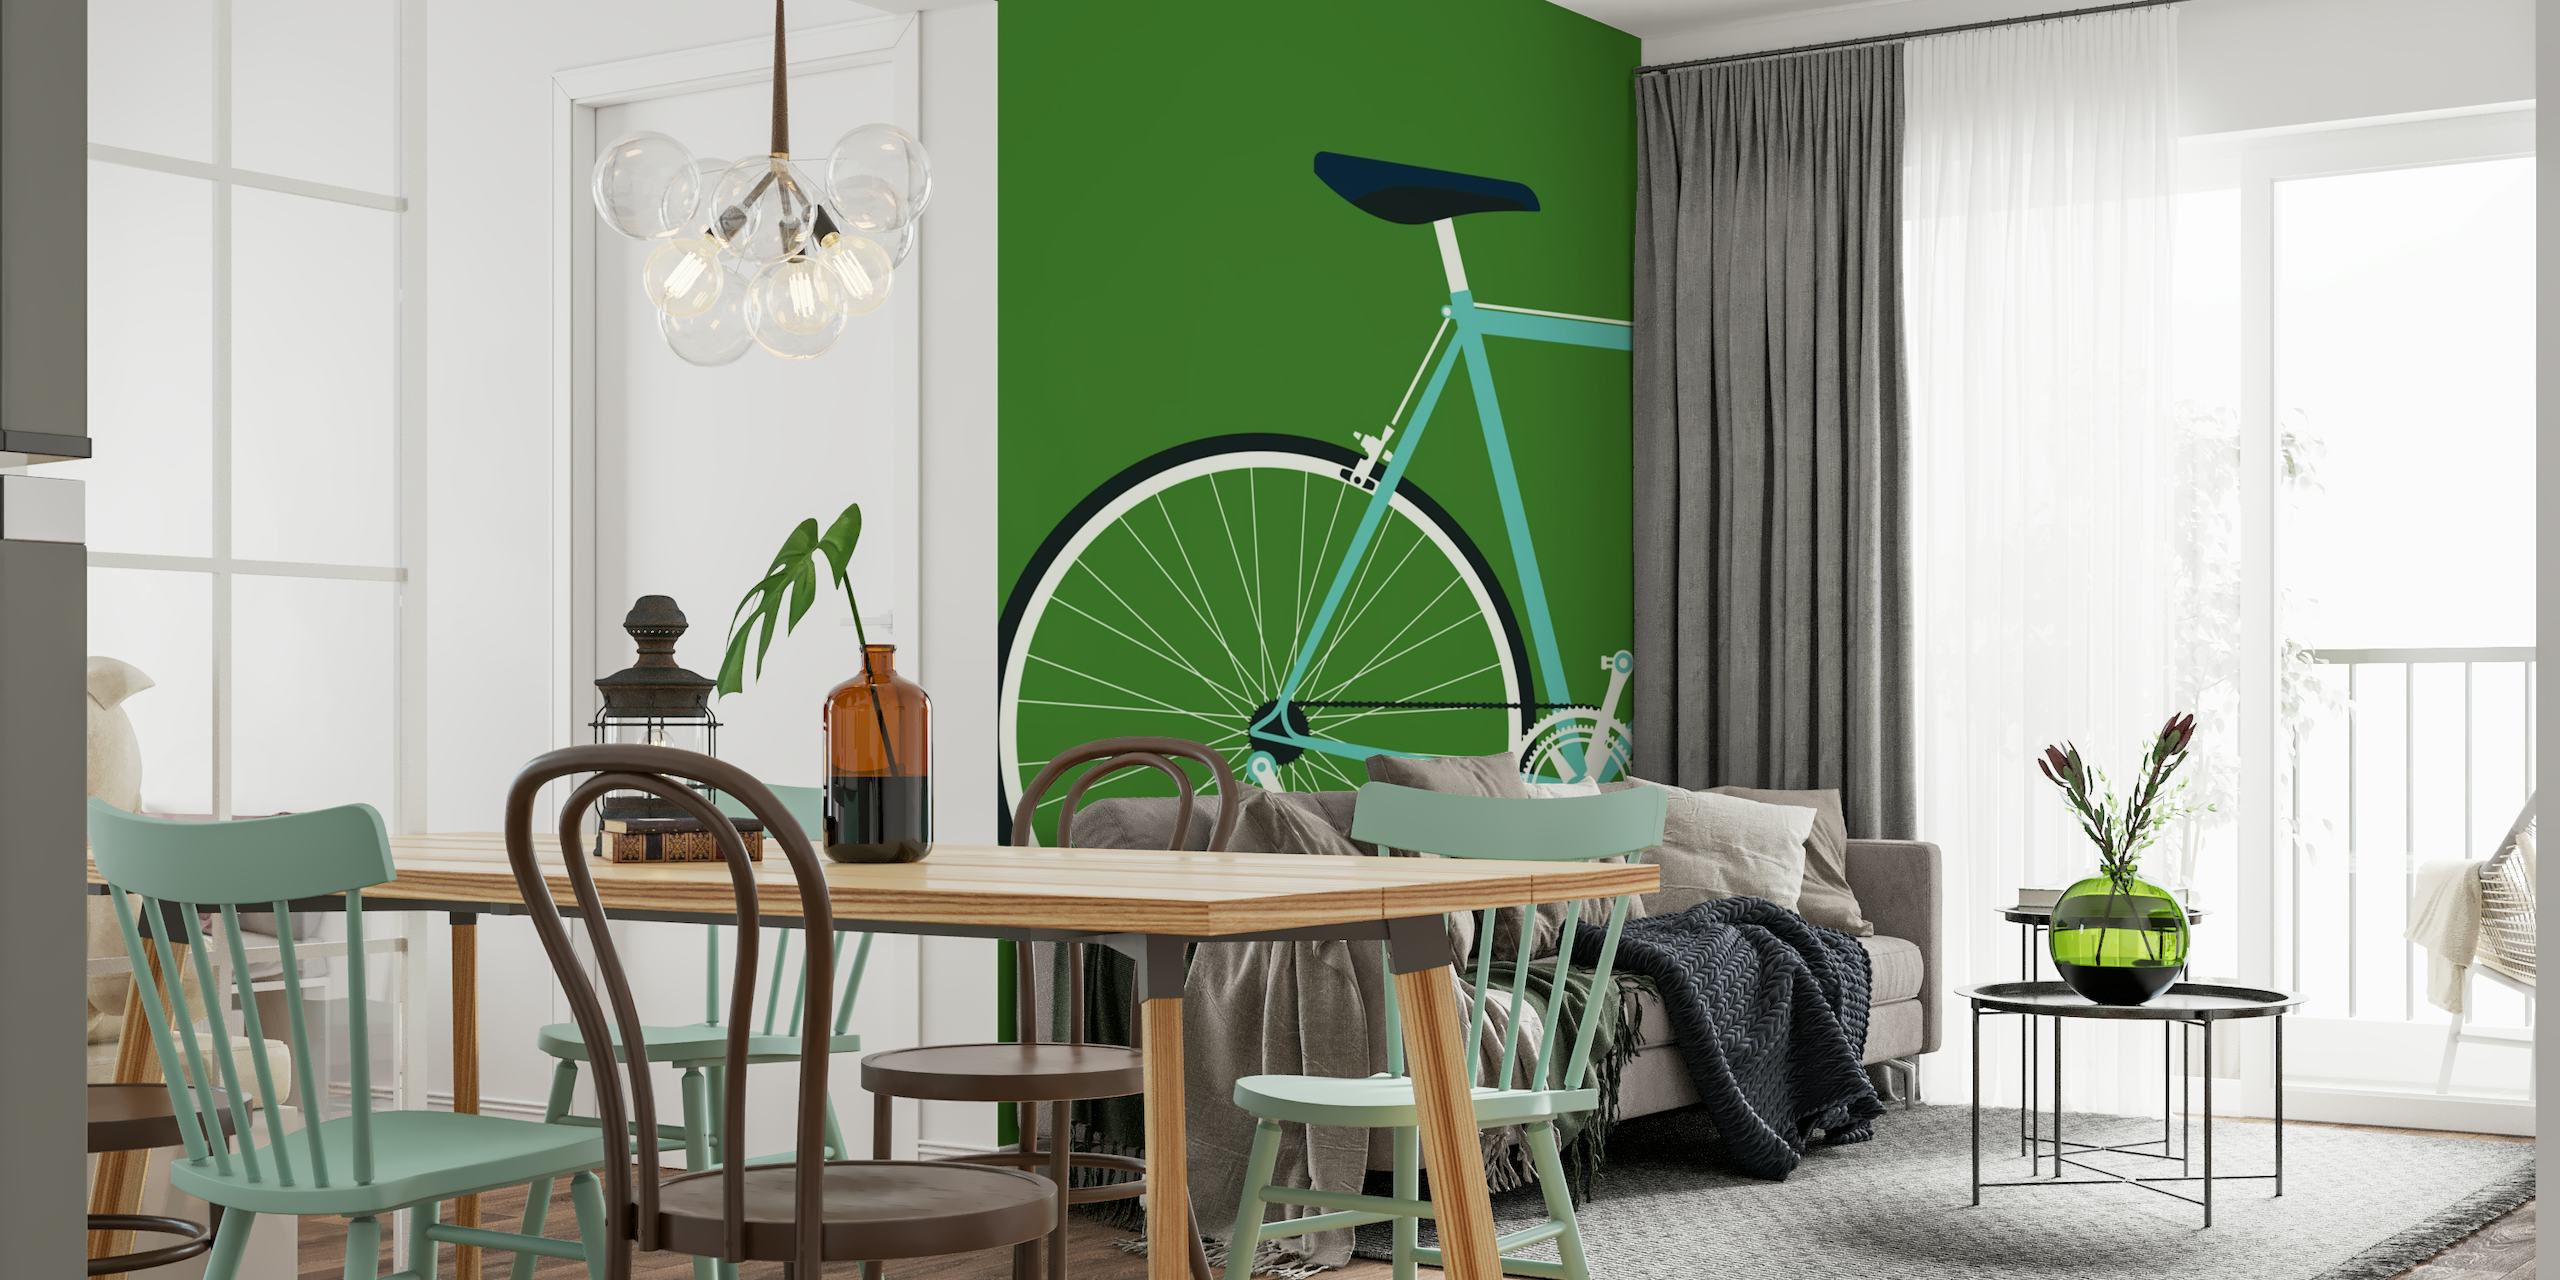 Bianchi Achtermuurschildering met een gestileerd fietssilhouet op een groene achtergrond